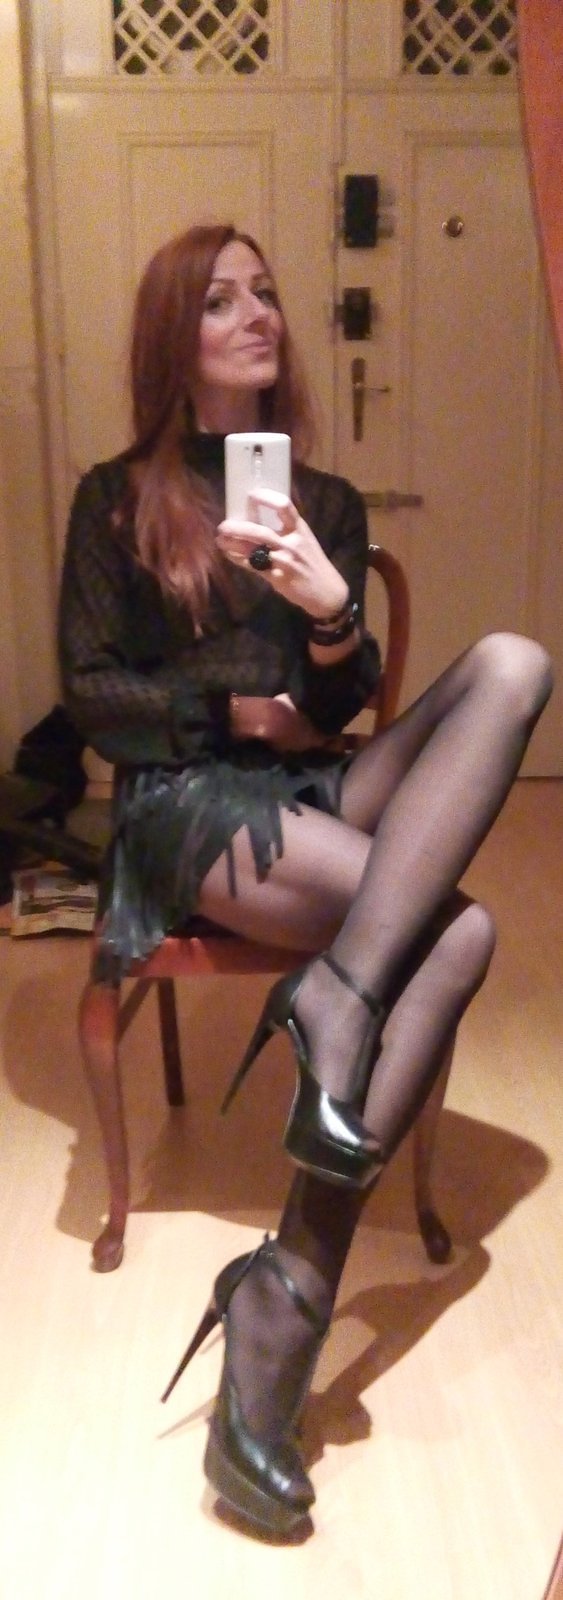 nefis foxy olgun hatun selfie için naylon çorap ve yüksek topuklu şaşırtıcı güzel bacaklar açığa picture